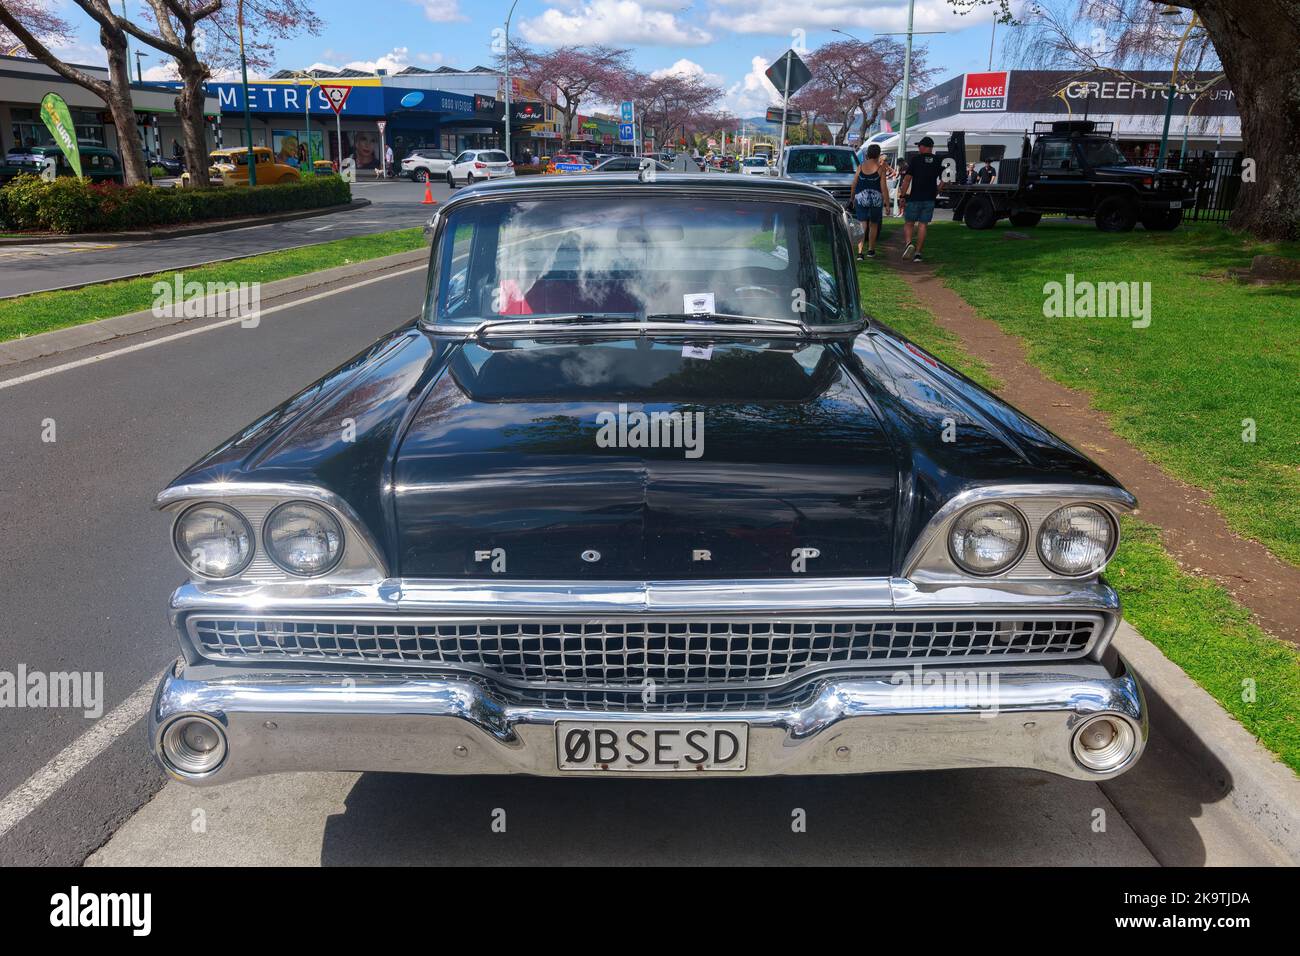 Vue de face d'un Ford Ranchero ute 1959 lors d'un spectacle de voitures classiques à Tauranga, Nouvelle-Zélande Banque D'Images